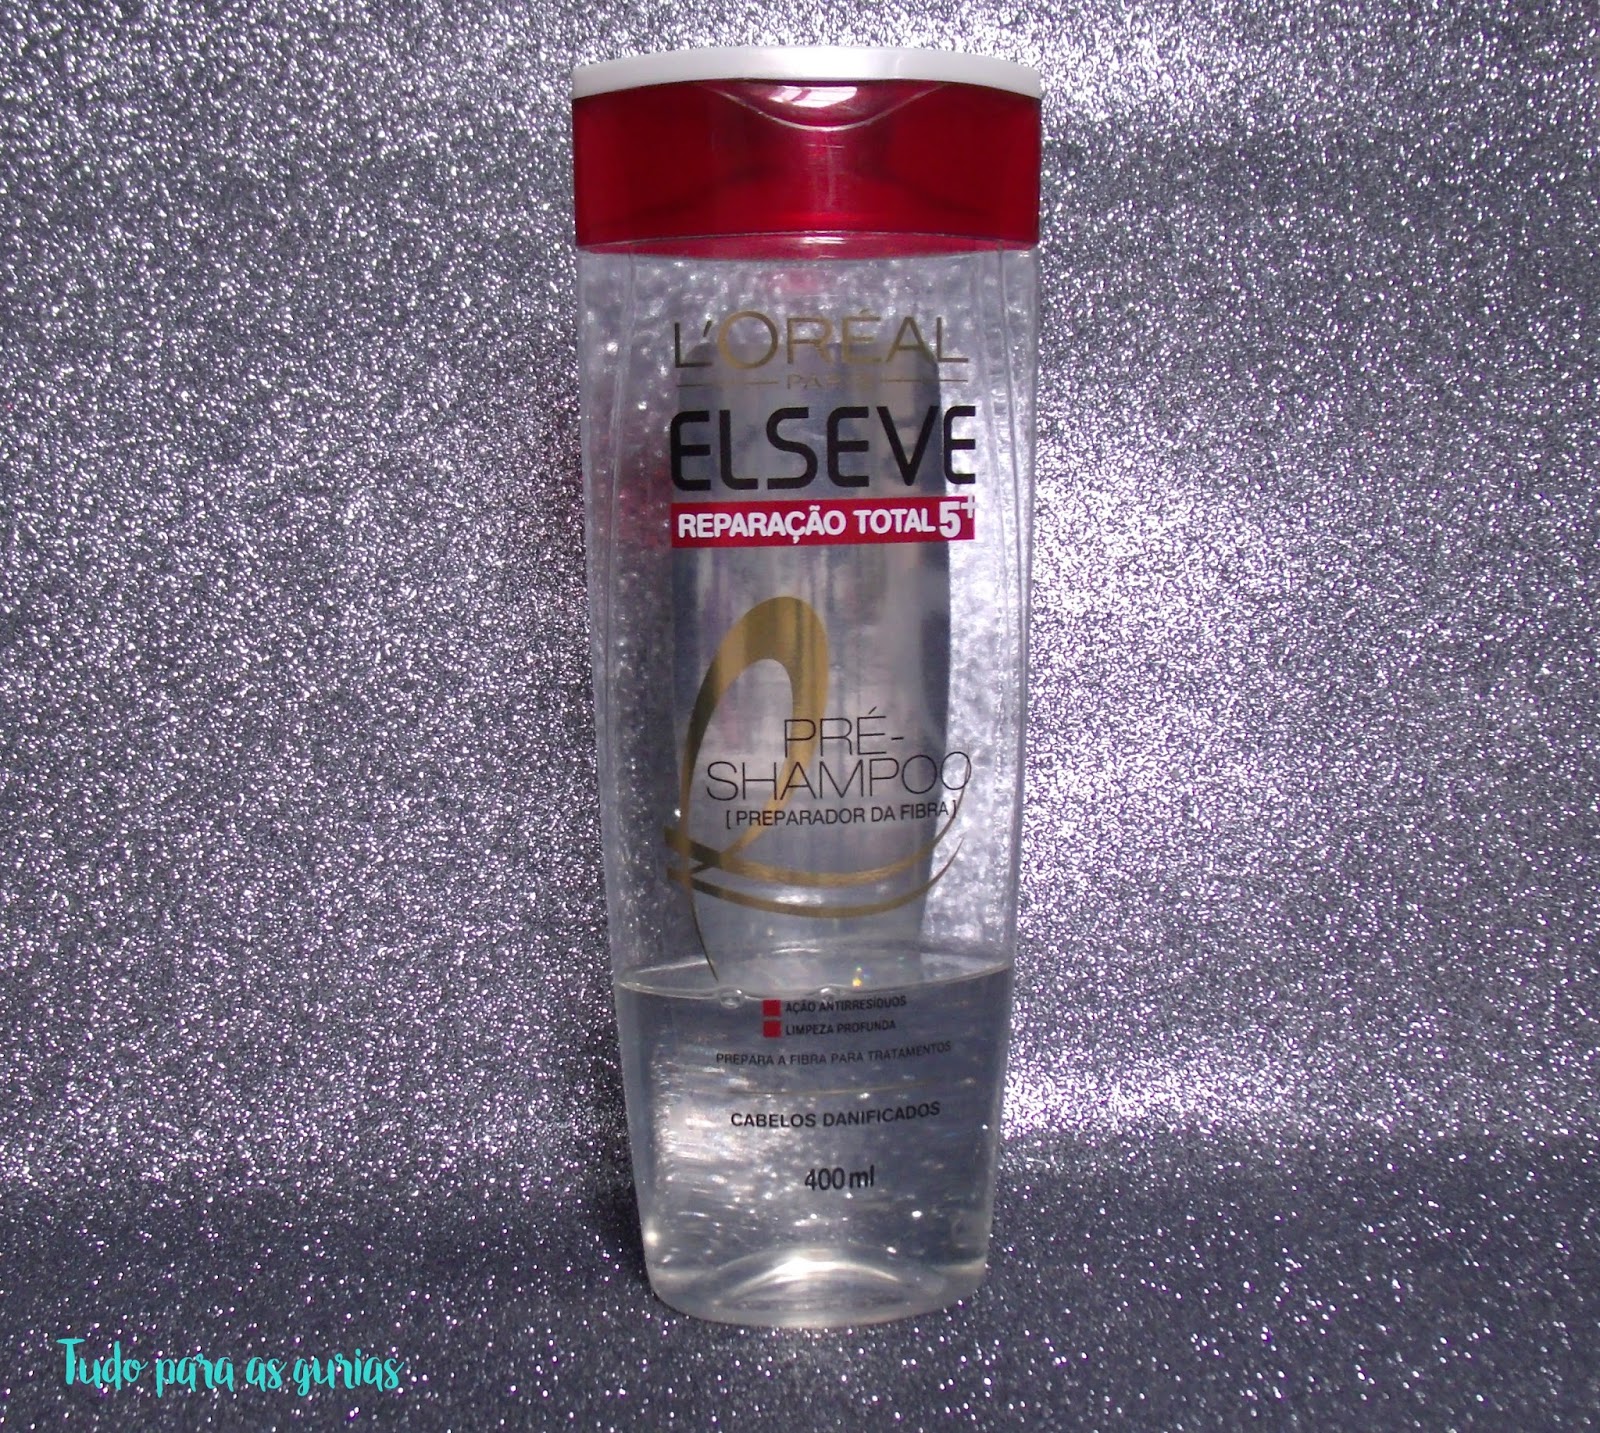 Pré-Shampoo Elseve Reparação Total 5+; shampoo; elseve; pre shampoo